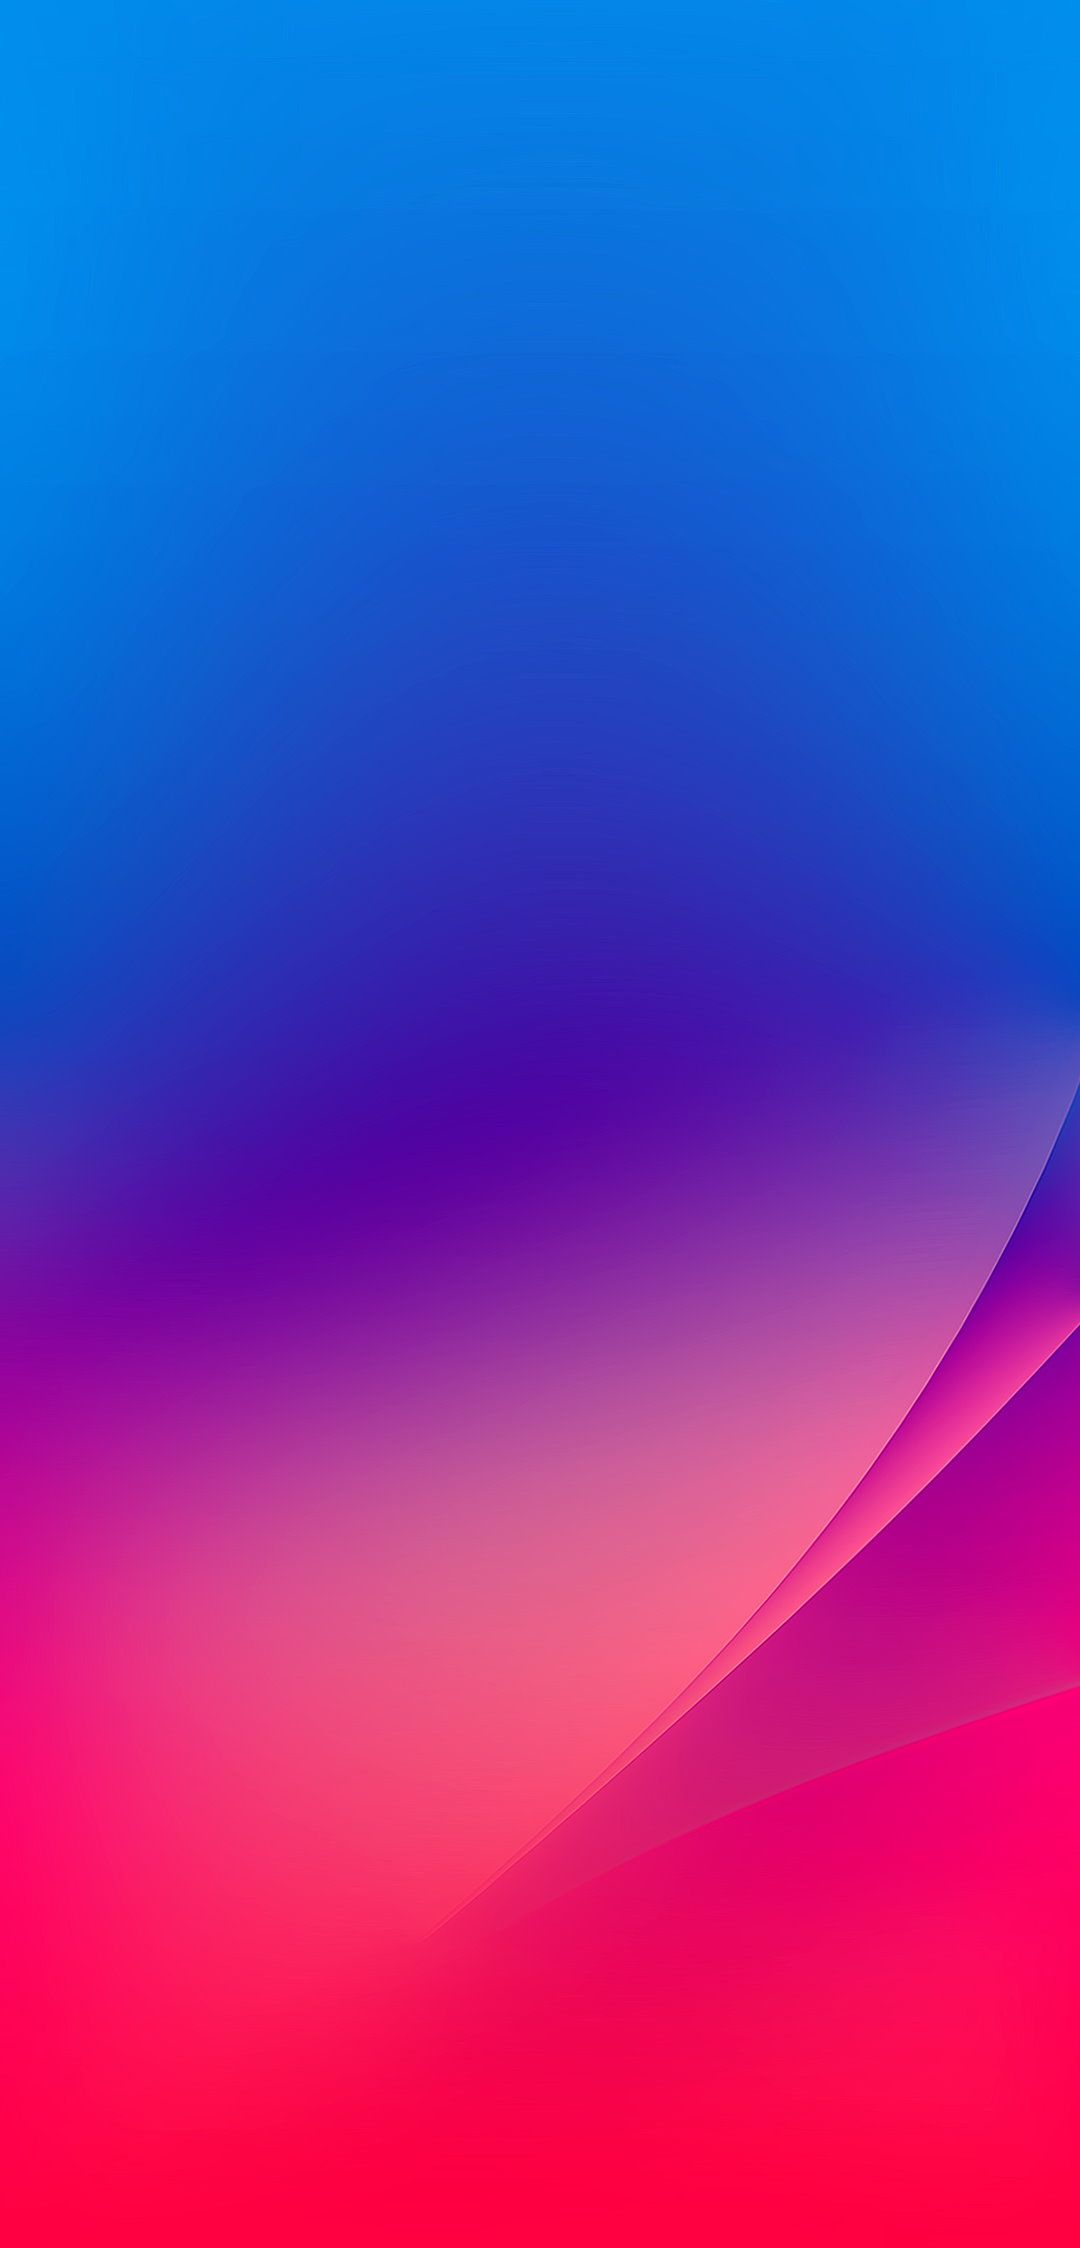 28+] Xiaomi Wallpapers - WallpaperSafari